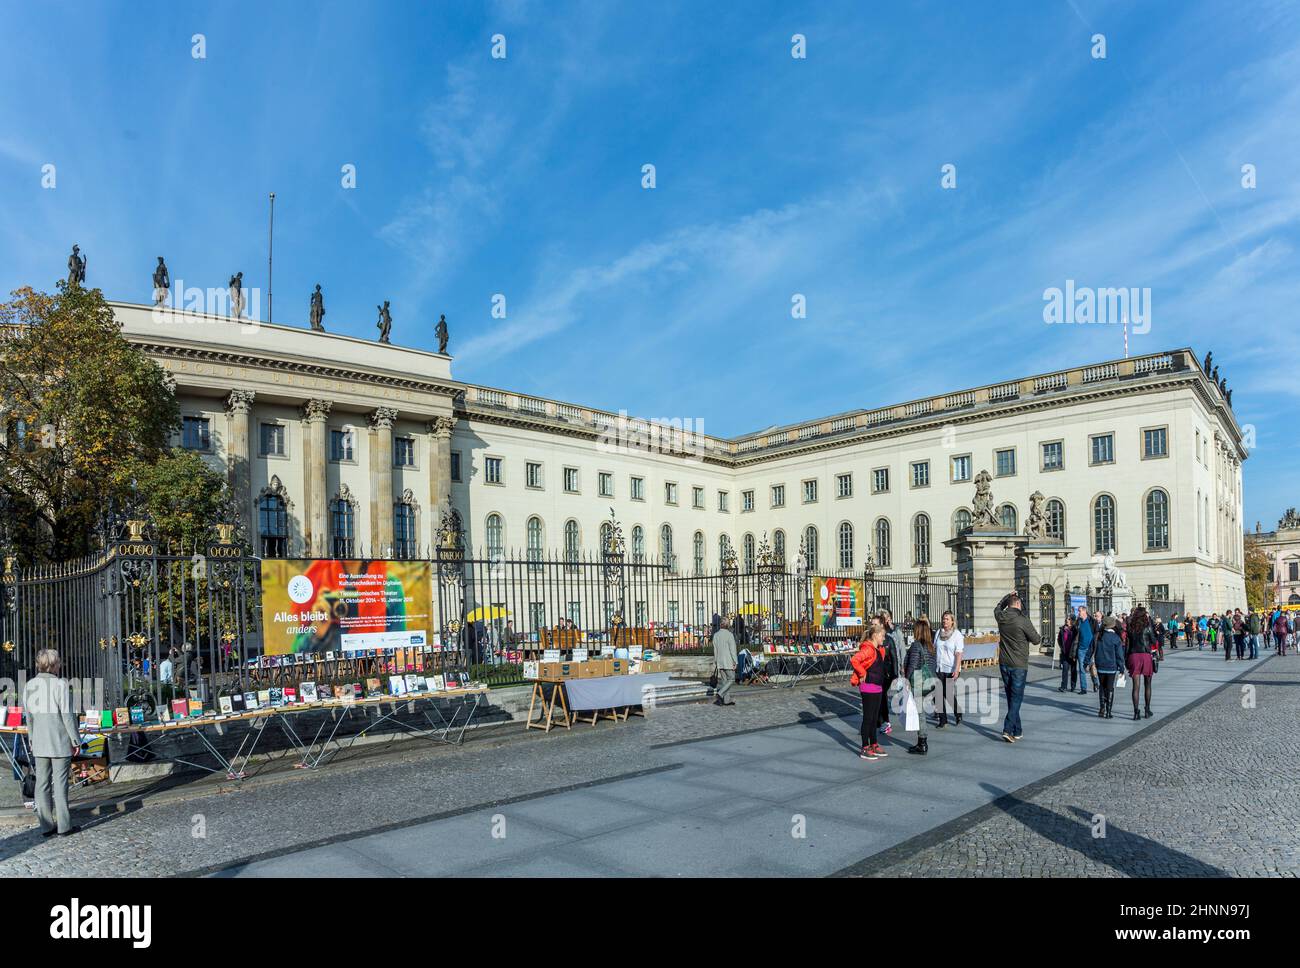 Vista de la Universidad Humboldt de Berlín. Humboldt University es una de las universidades más antiguas de Berlín, fundada en 1810. Foto de stock